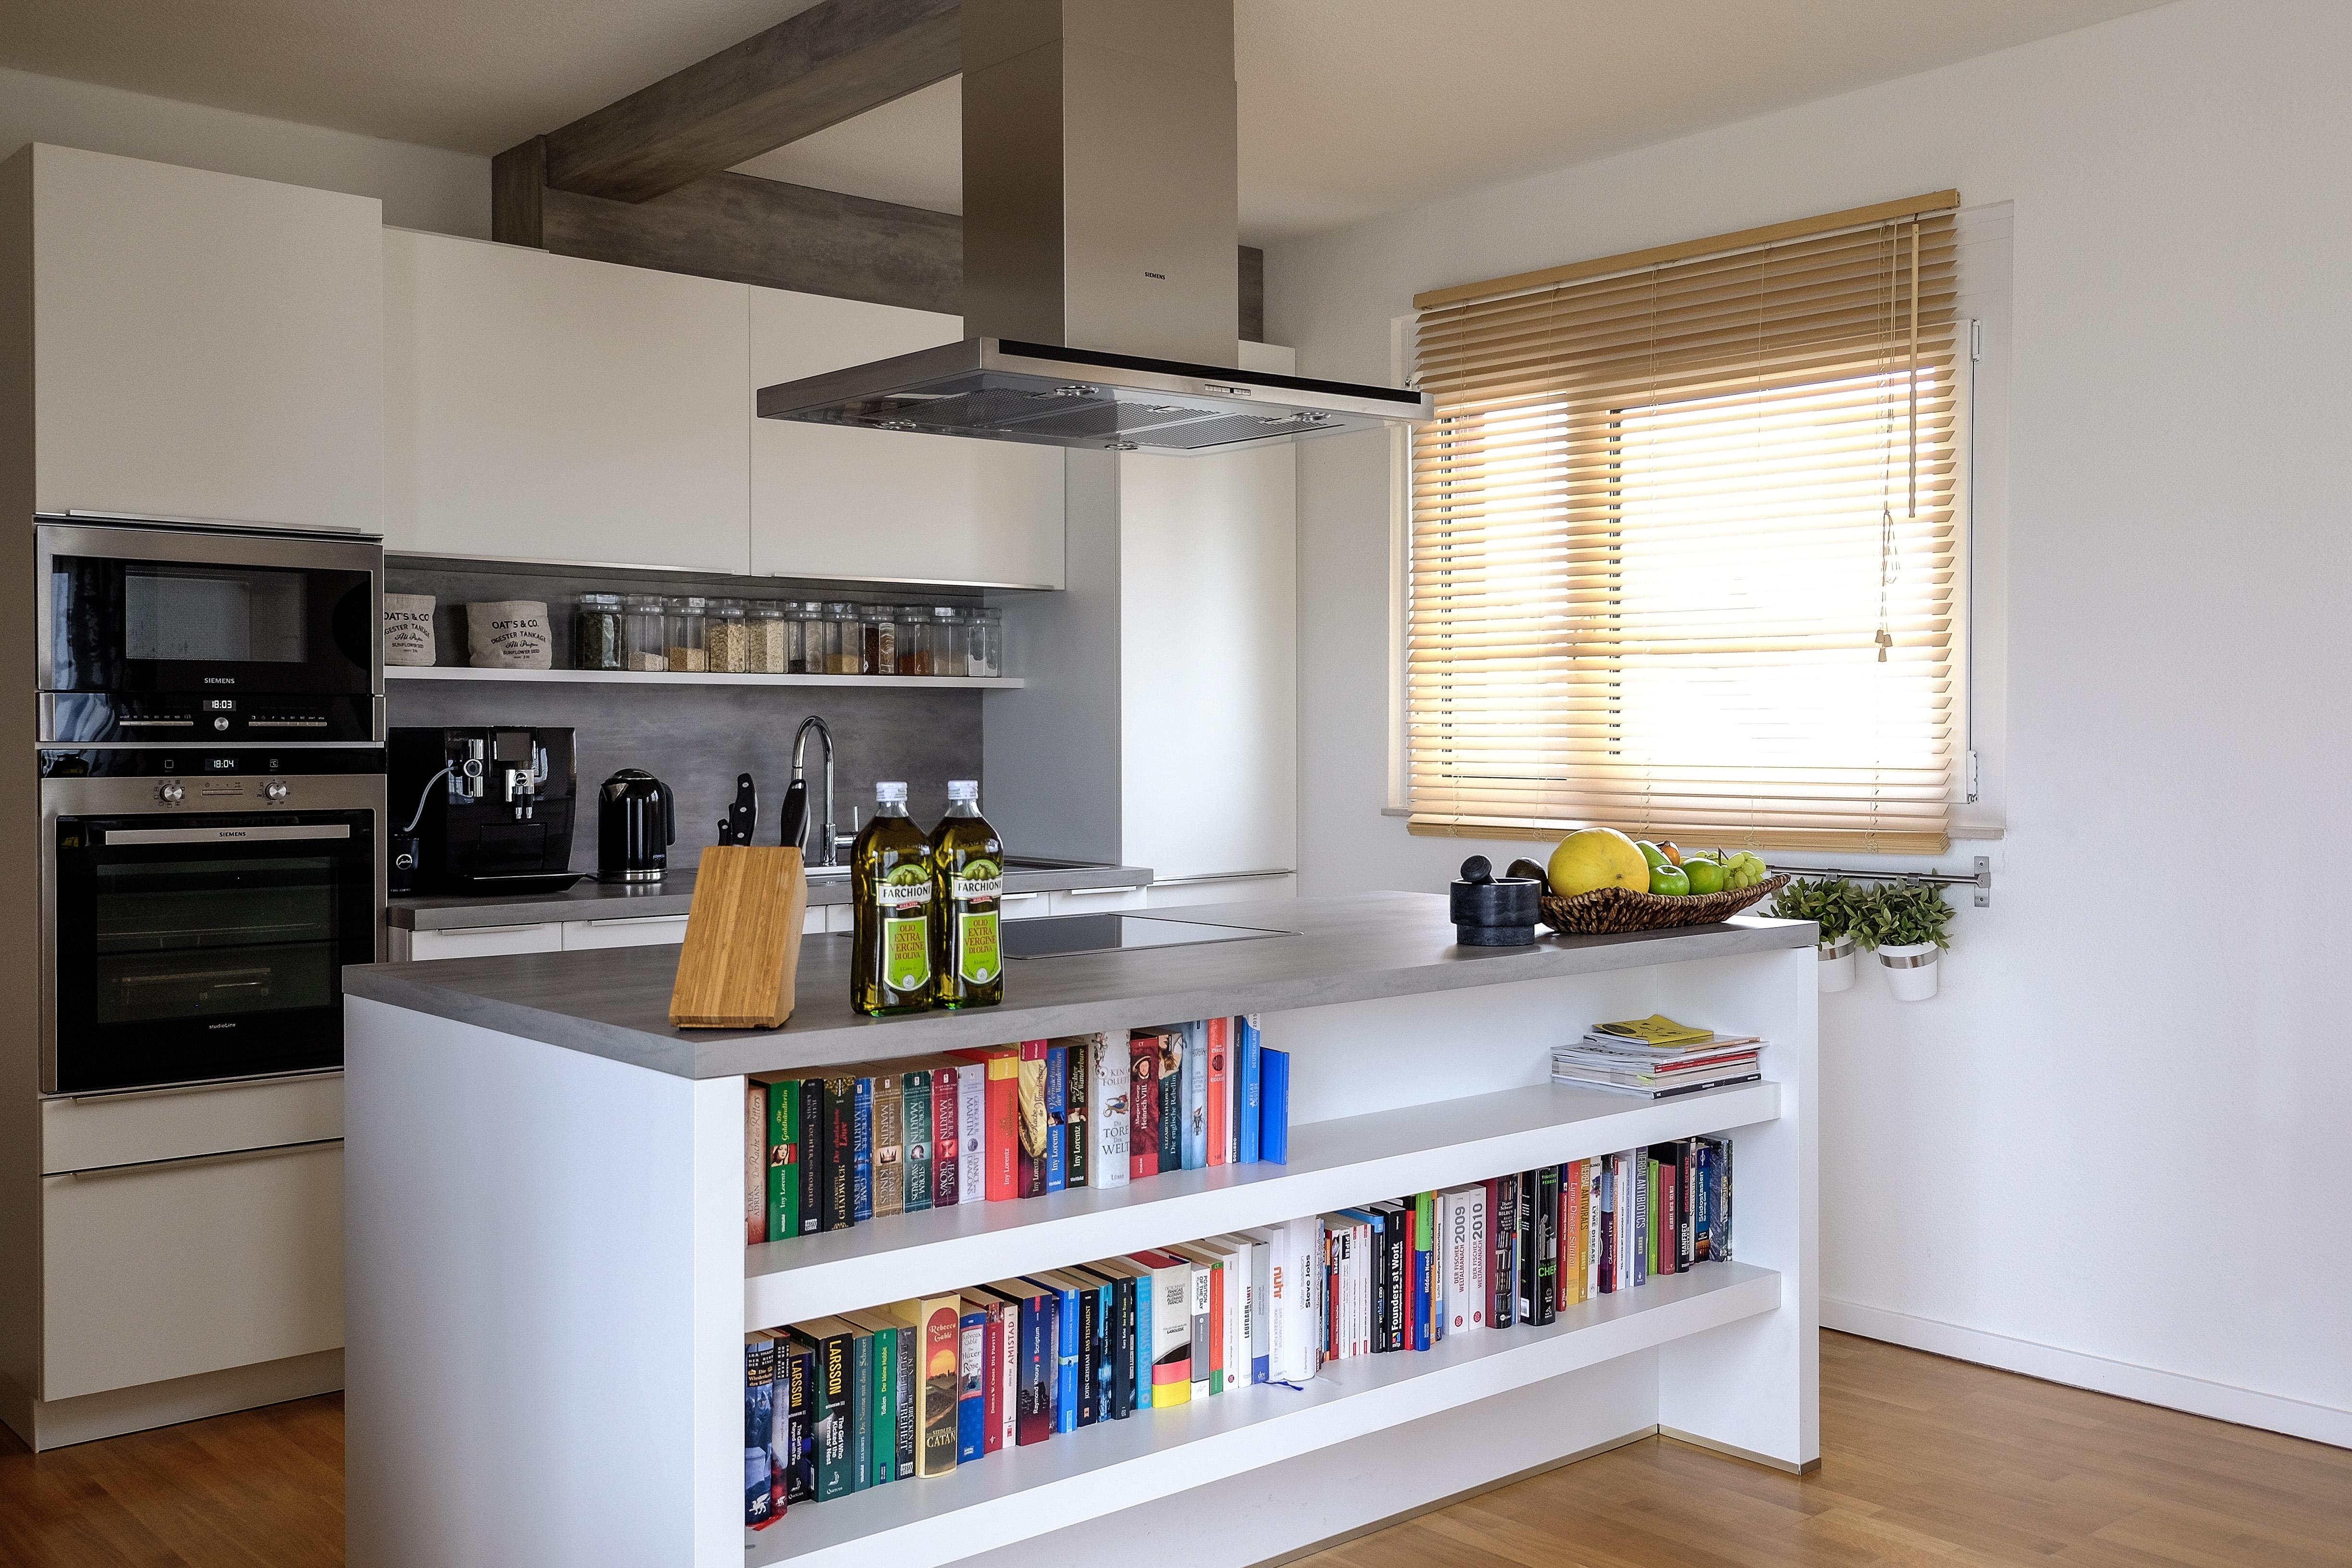 Kücheninsel mit Bücherregal #bücherregal #küchendeko ©EXTRVIEL office & home design